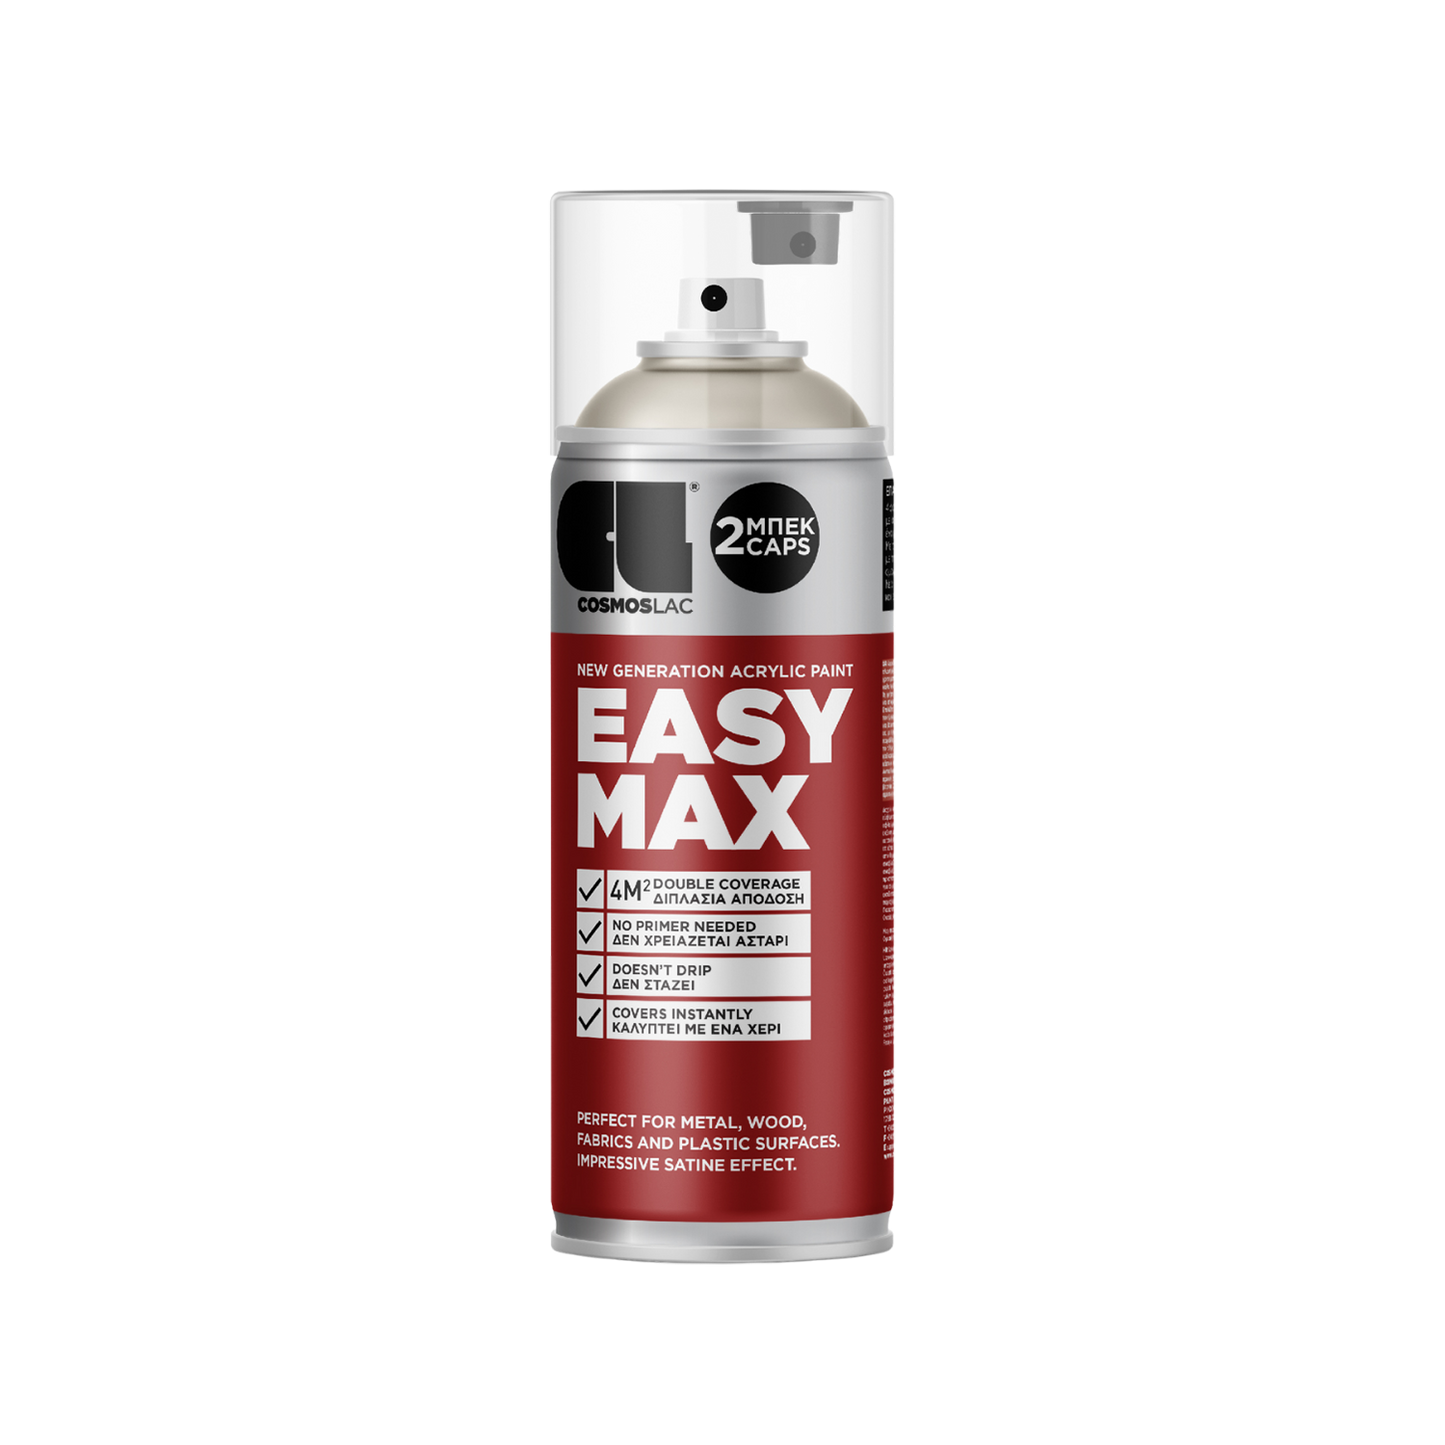 COSMOS LAC EASY MAX Premium Acryllack Sprühlack zum Upcycling und DIY Projekten von Möbeln und Dekoobjekten rot silberne Sprühflasche Inhalt ist pastell-beige Acrylfarbe